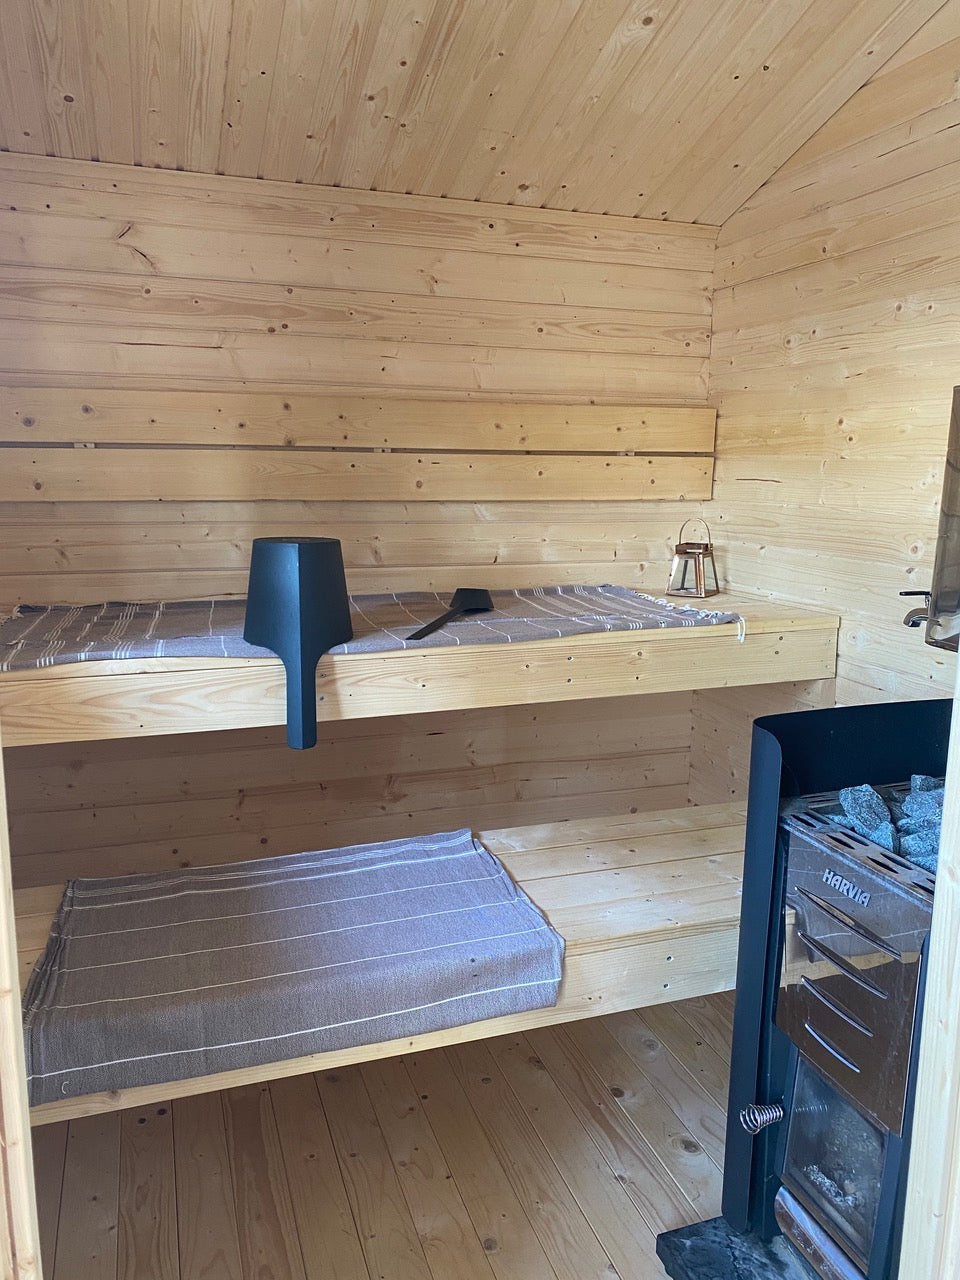 Almost Heaven Appalachia 6-Person Cabin Sauna-Traditional Saunas-Nordica Sauna